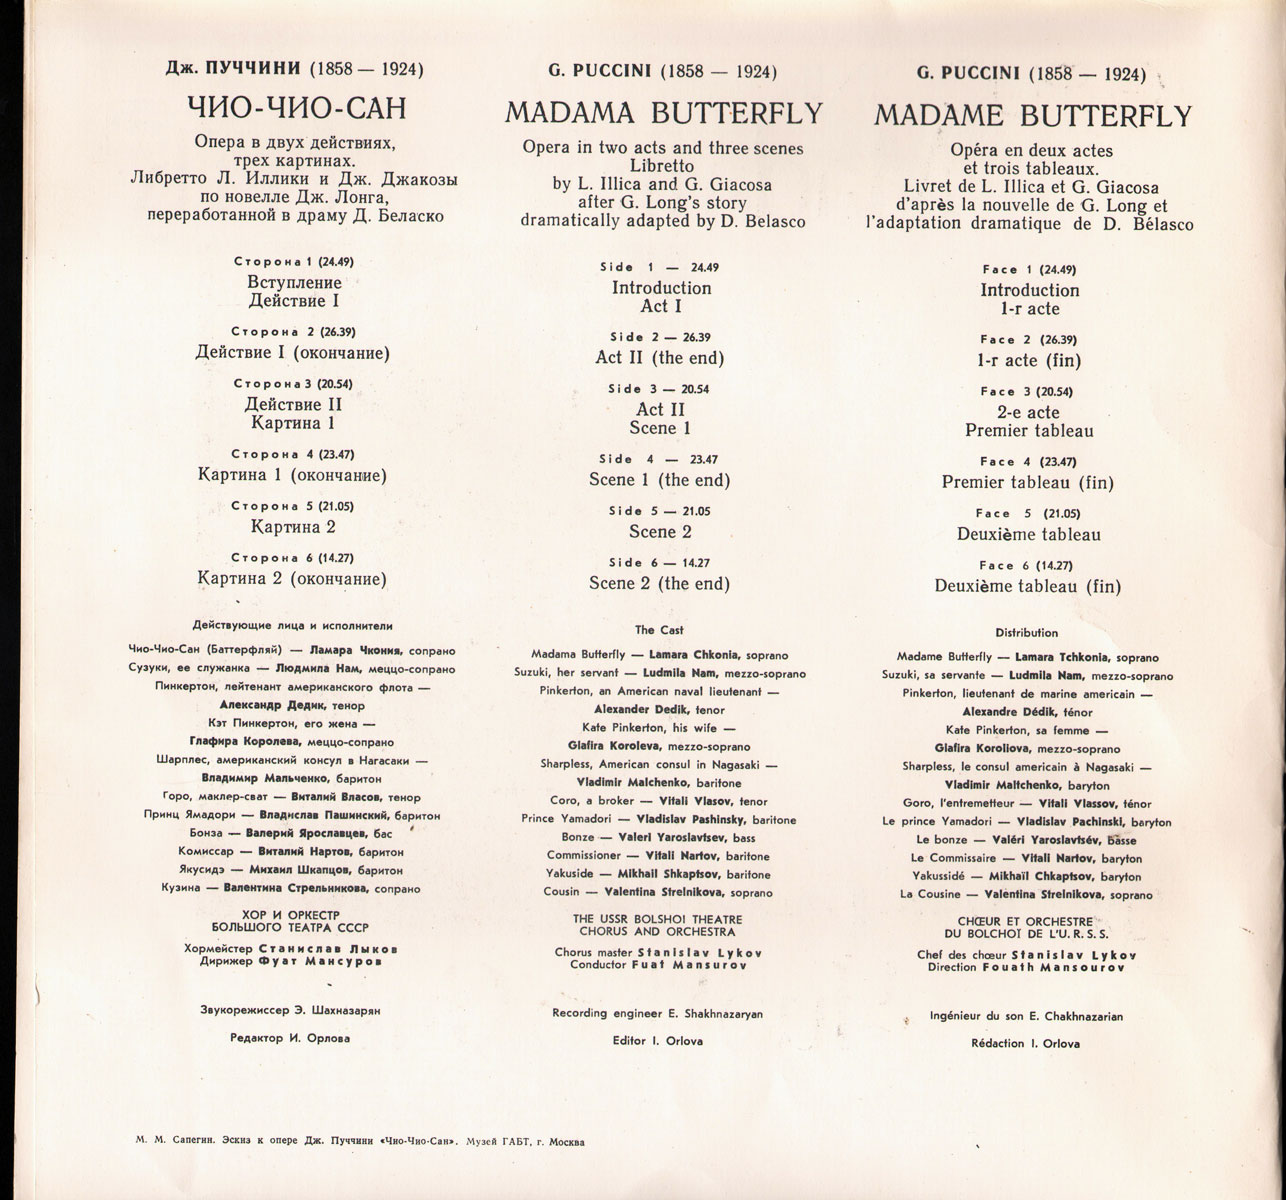 Дж. ПУЧЧИНИ (1858-1924): «Мадам Баттерфляй», опера в двух действиях